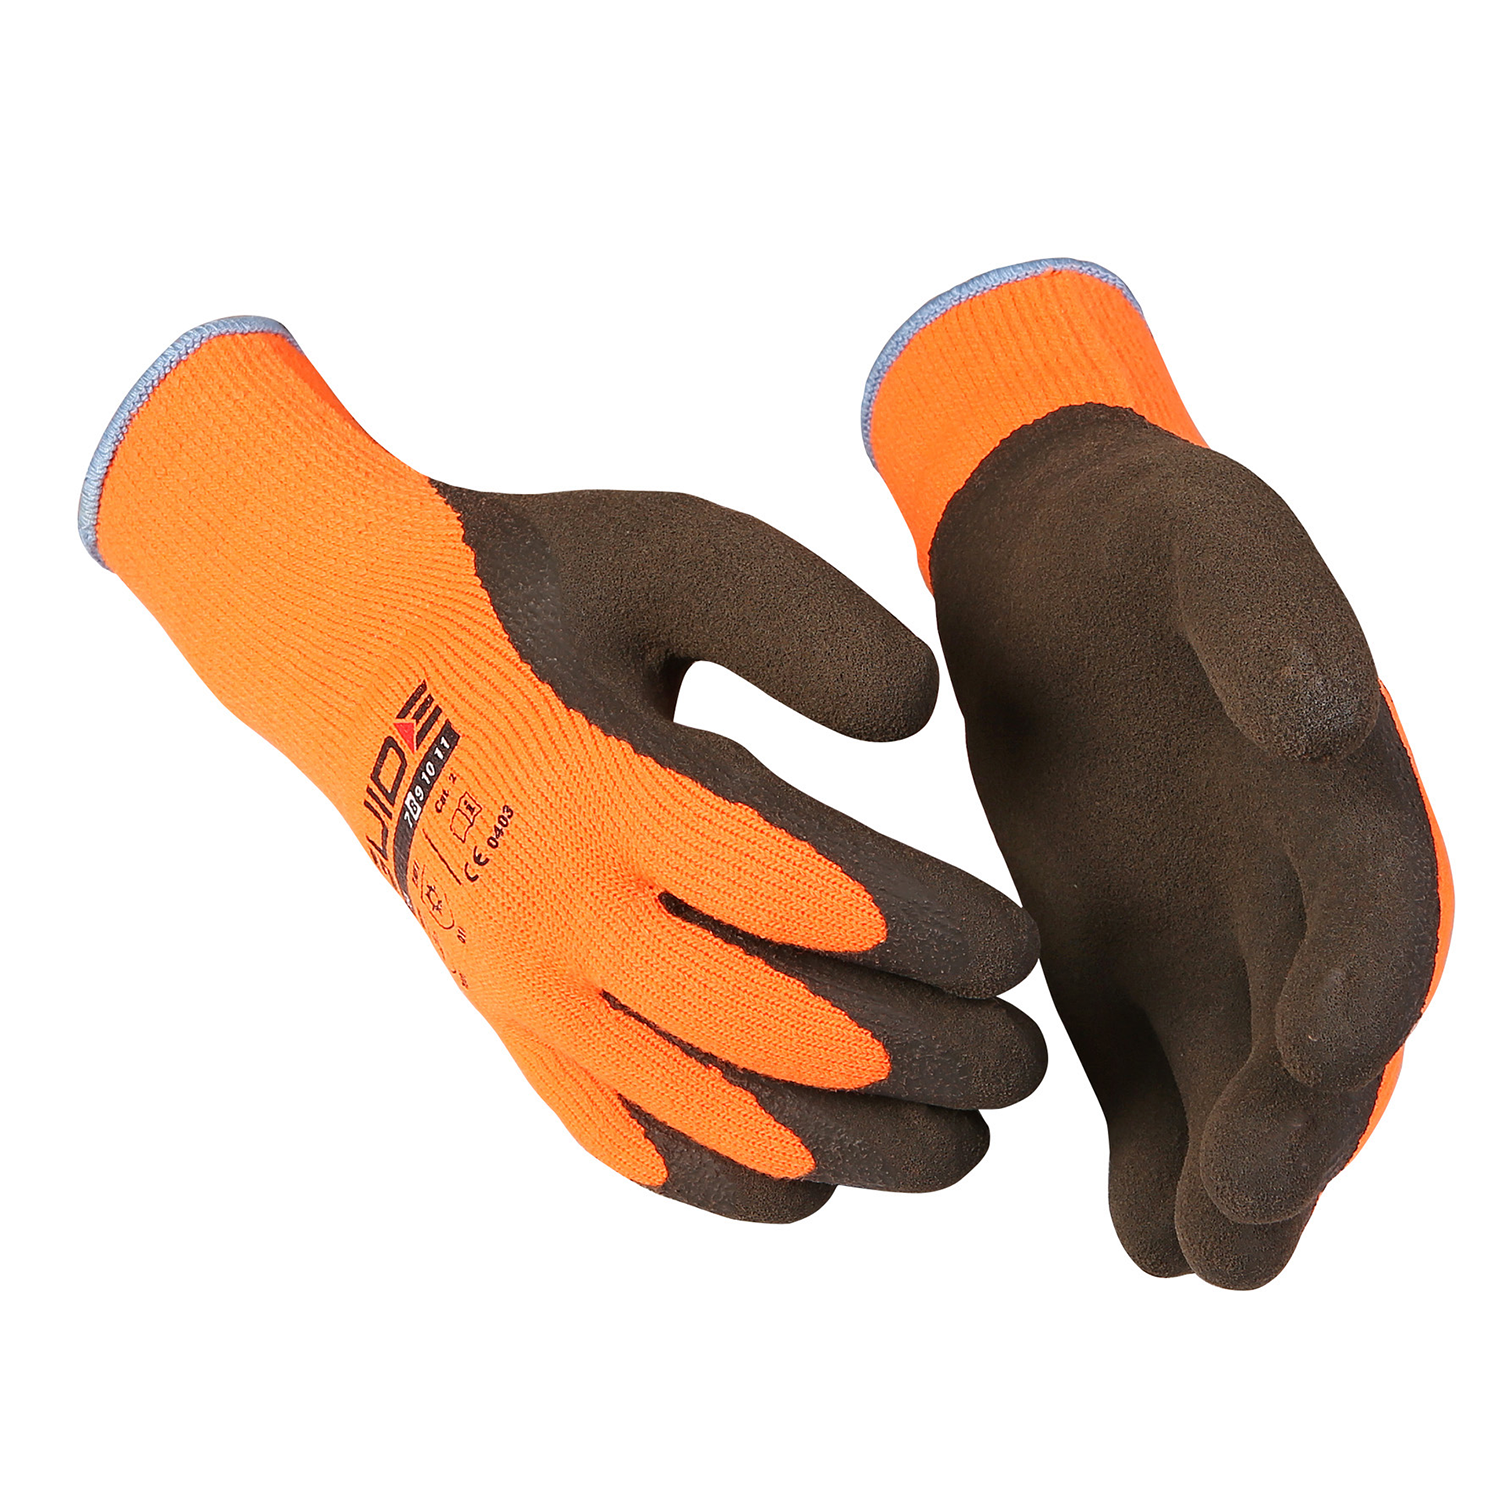 Перчатки женские рабочие зимние. Перчатки Guide 158. Pv600 перчатки. Stayer 67736 перчатки. Перчатки защитные Skydda.